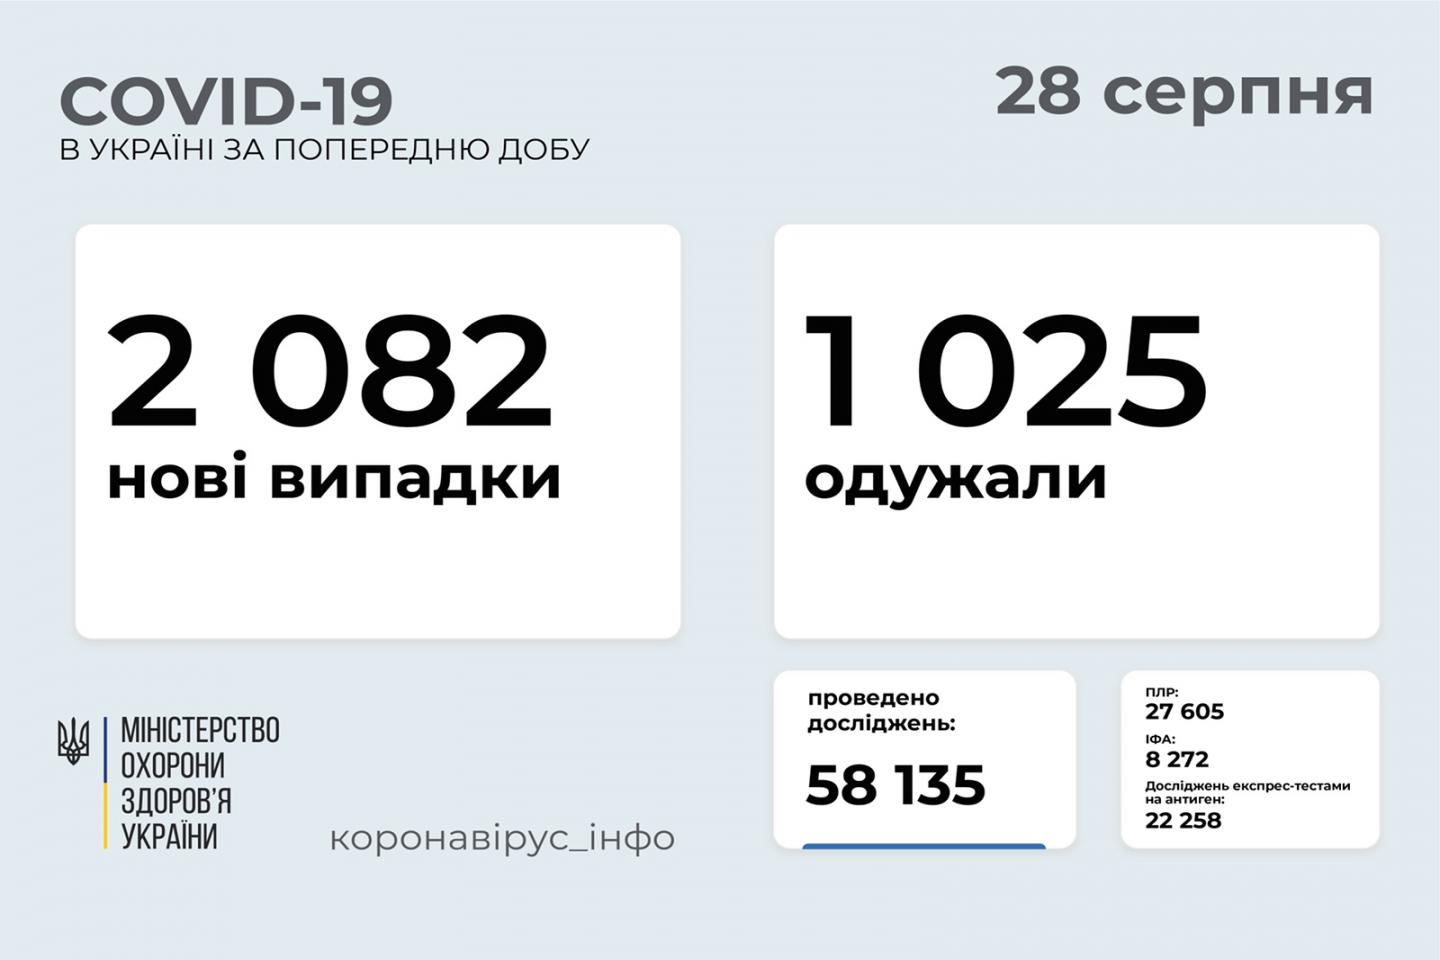 http://dunrada.gov.ua/uploadfile/archive_news/2021/08/28/2021-08-28_1399/images/images-60954.jpg